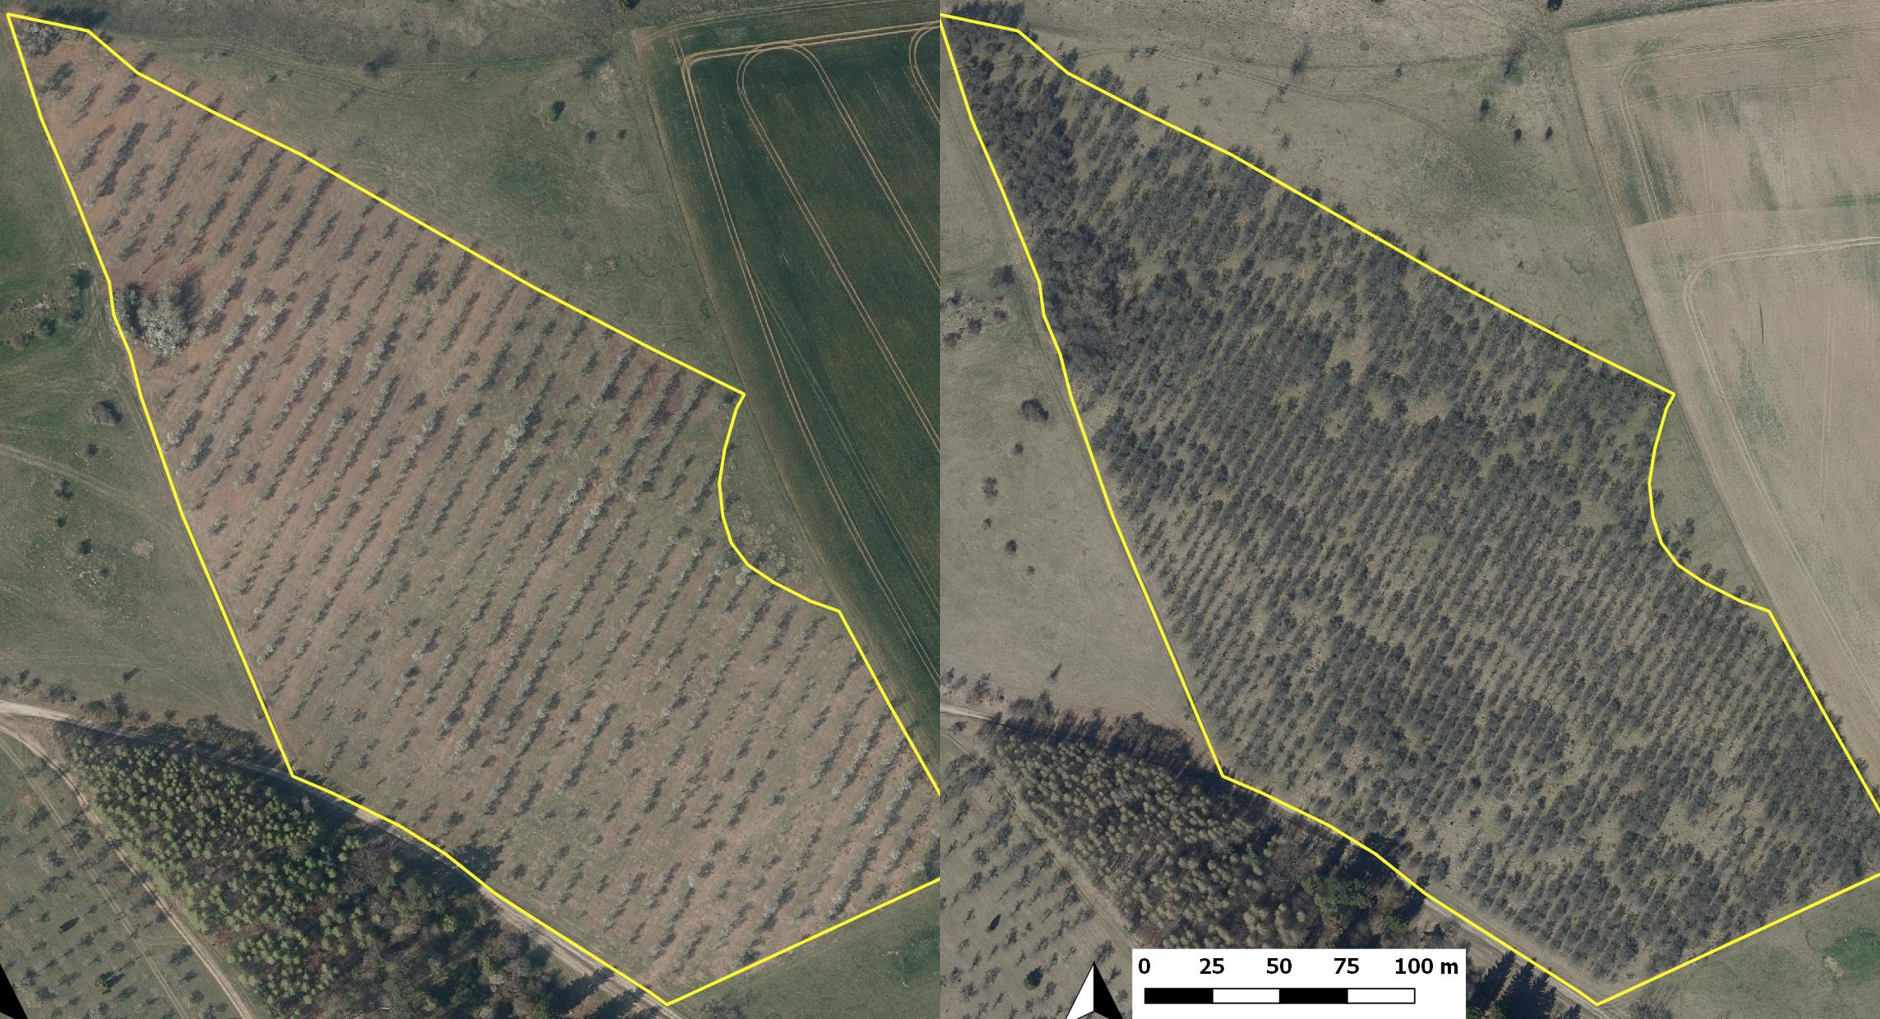 Luftbild des Pflaumenbestandes auf dem Bauernberg vor und nach (links) der Ausdünnung